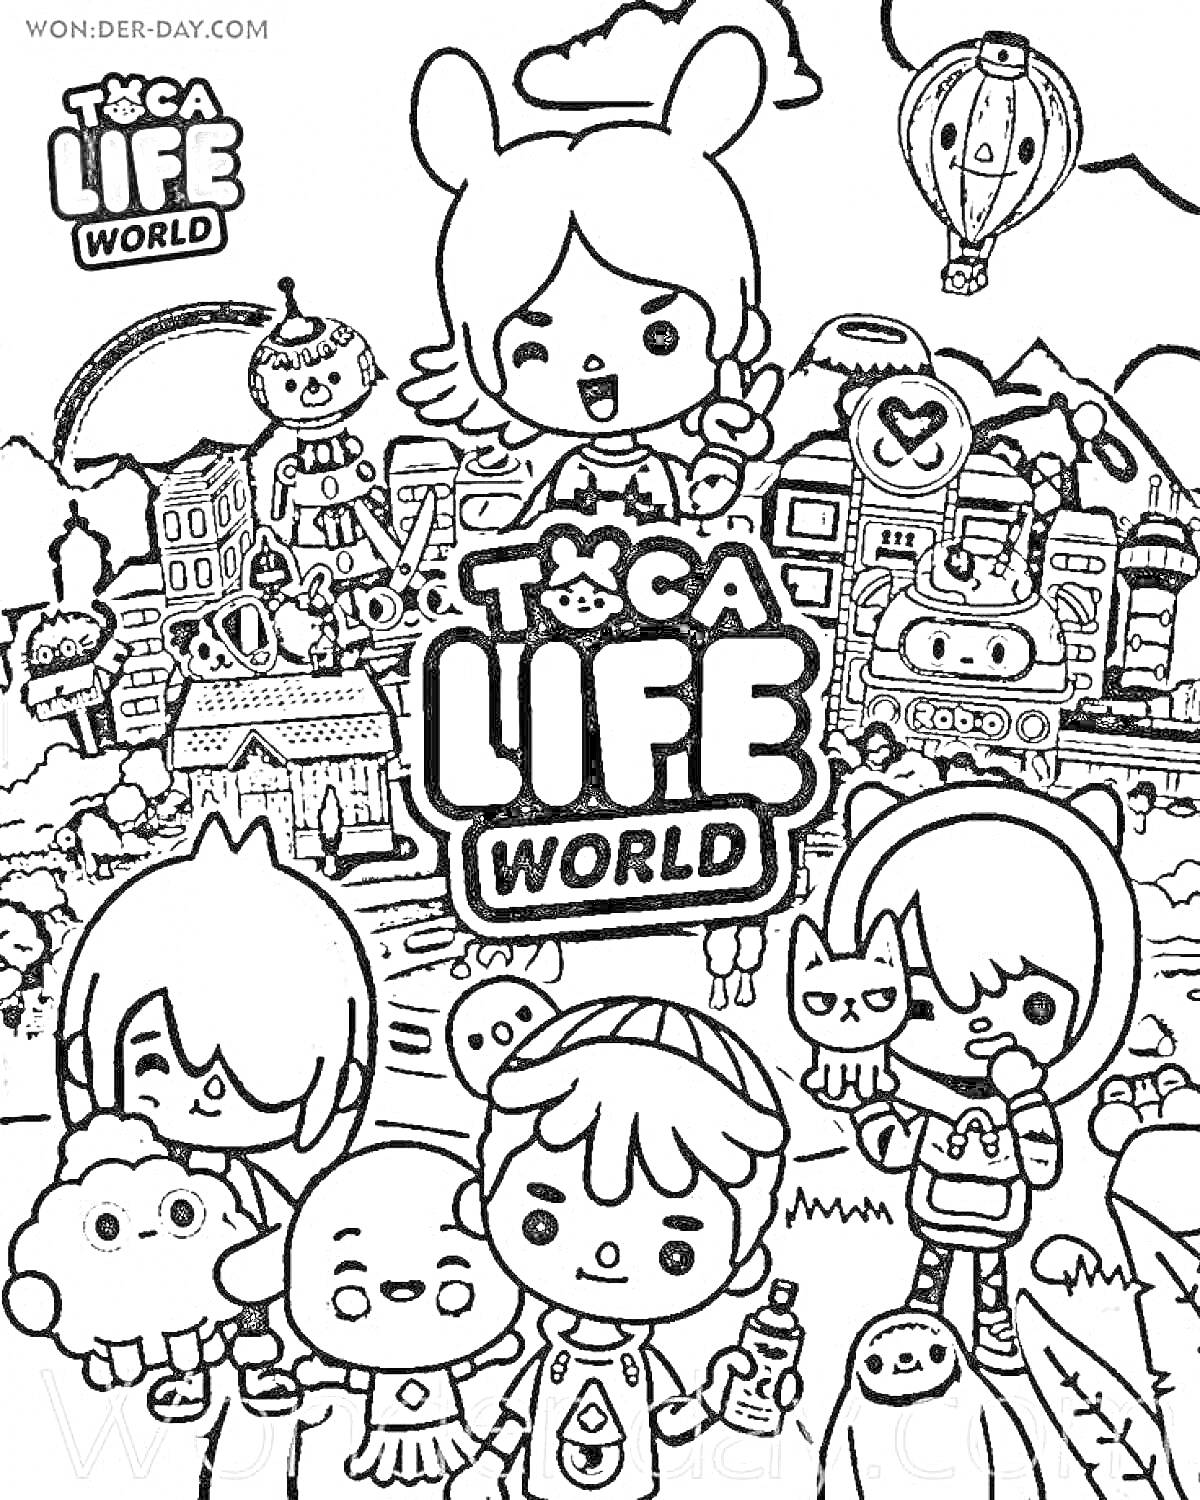 Toca Life World - персонажи на фоне города с воздушным шаром, замком и различными строениями